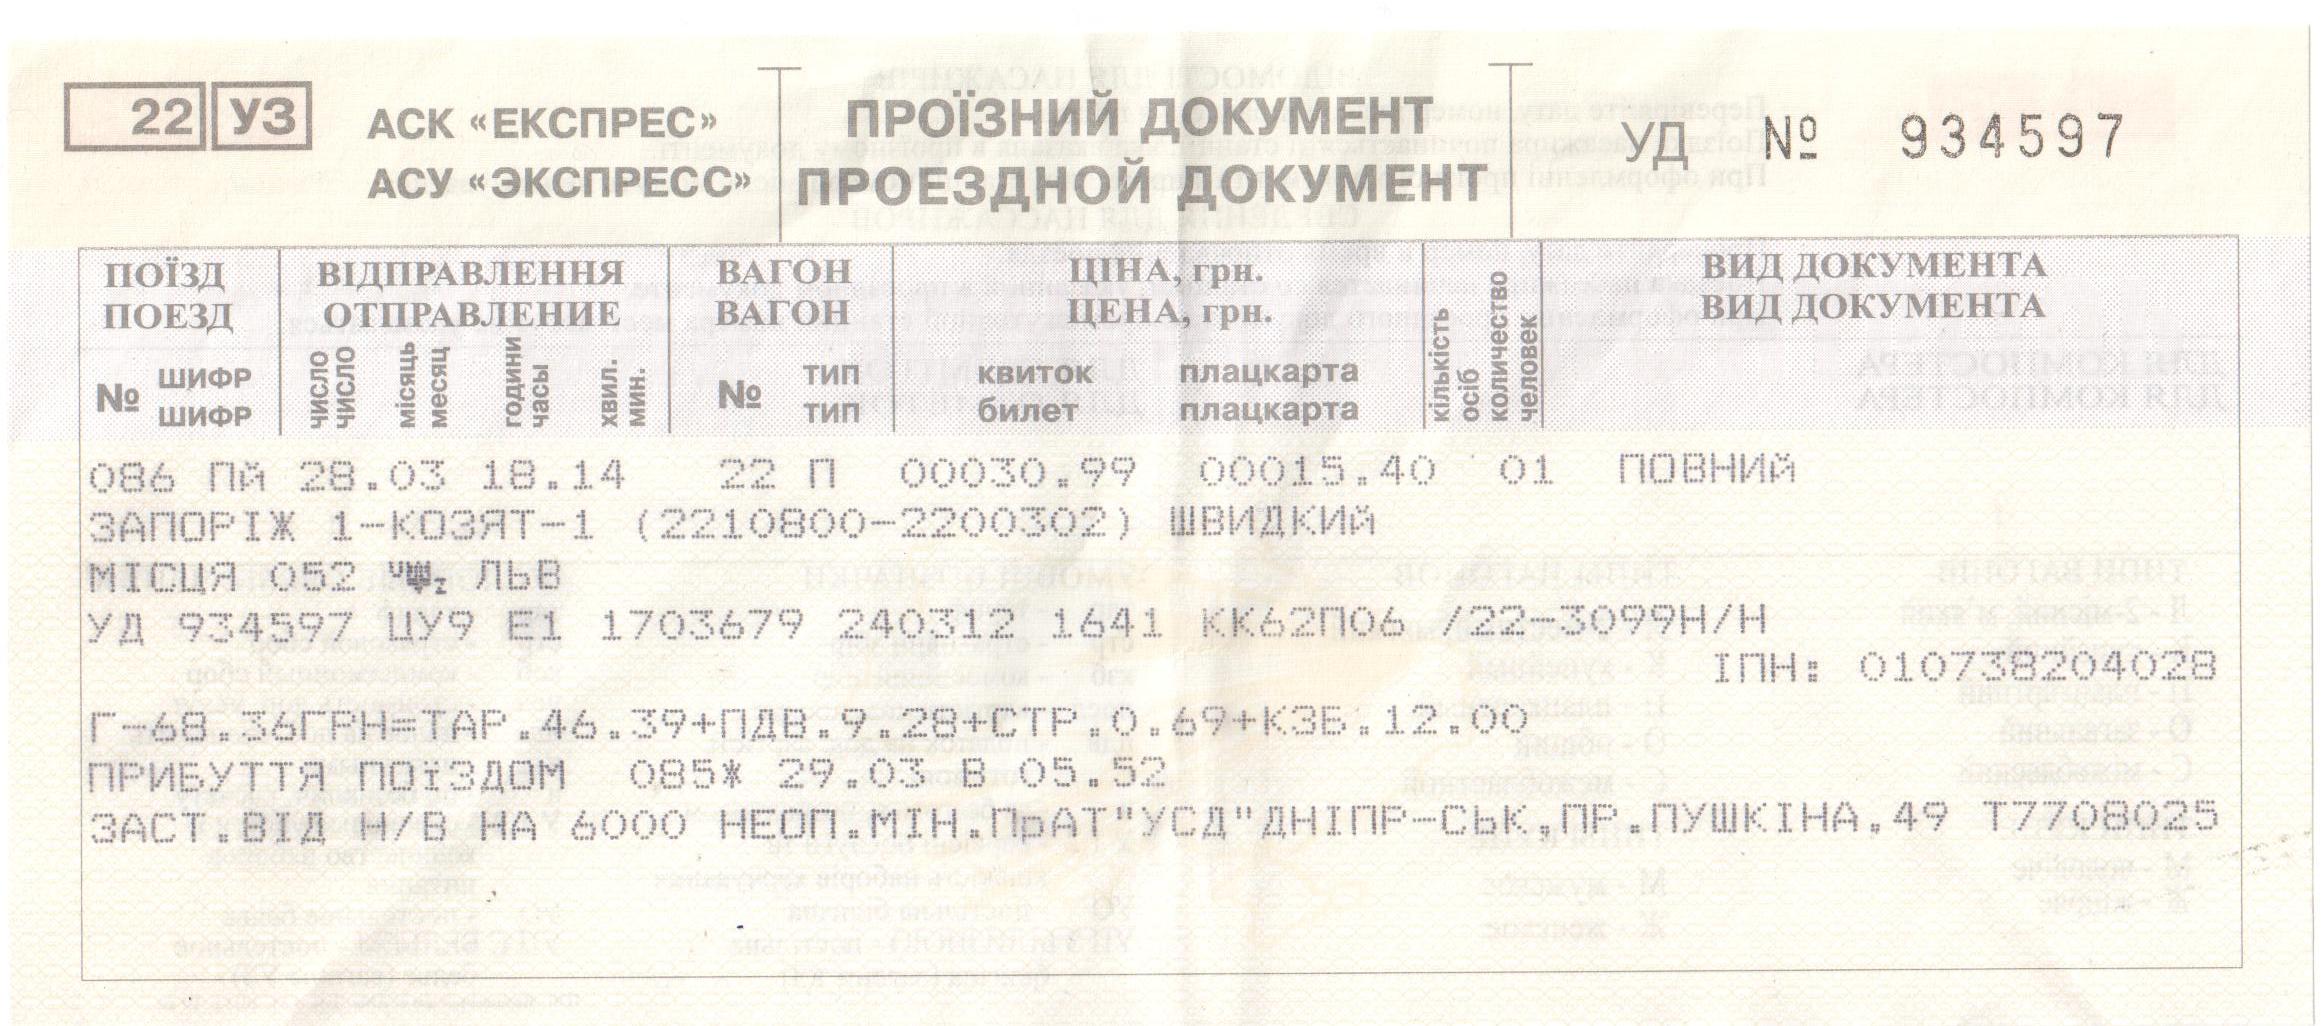 Купить билет на поезд на карте. ЖД билеты. Билет на поезд. Билеты на поезд Украина. Дубликат железнодорожного билета.